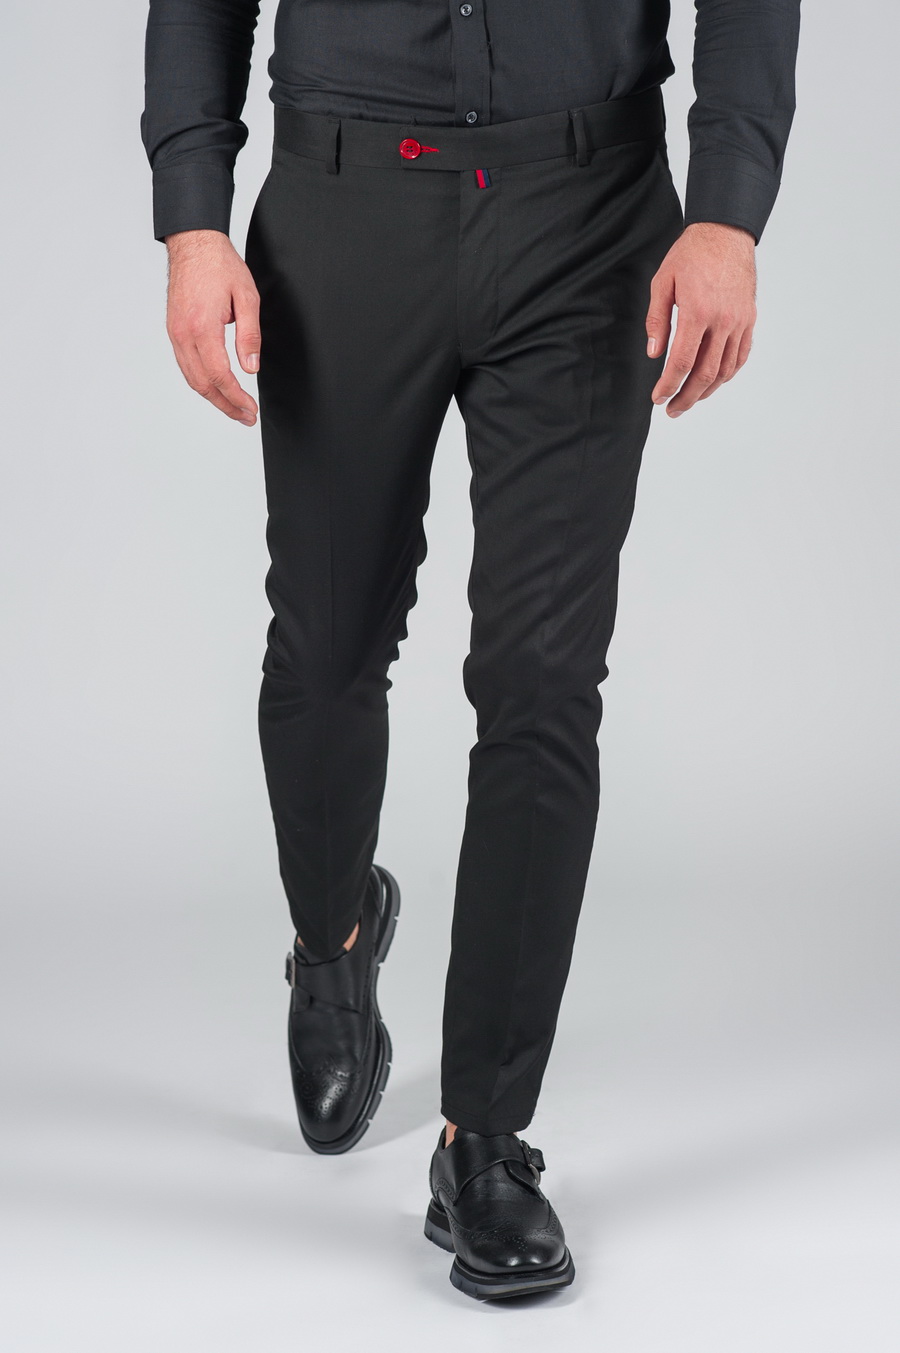 Черные зауженные брюки Арт.:5-001-8 – купить в магазине мужской одеждыSmartcasuals